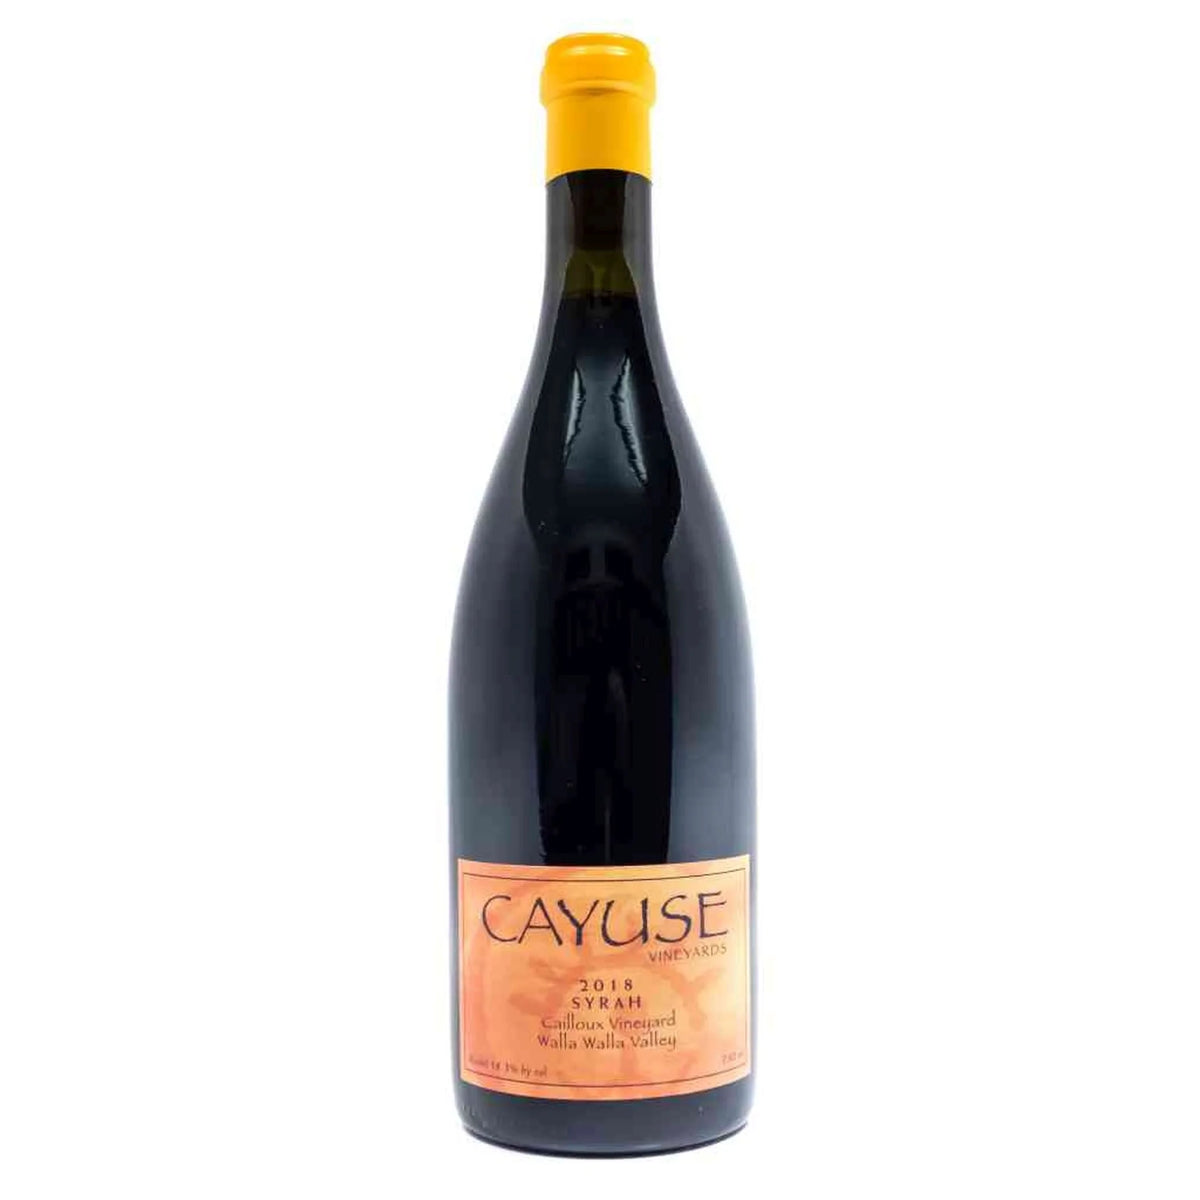 Cayuse-Rotwein-Shiraz-2018 Cailloux Vineyard Syrah-WINECOM